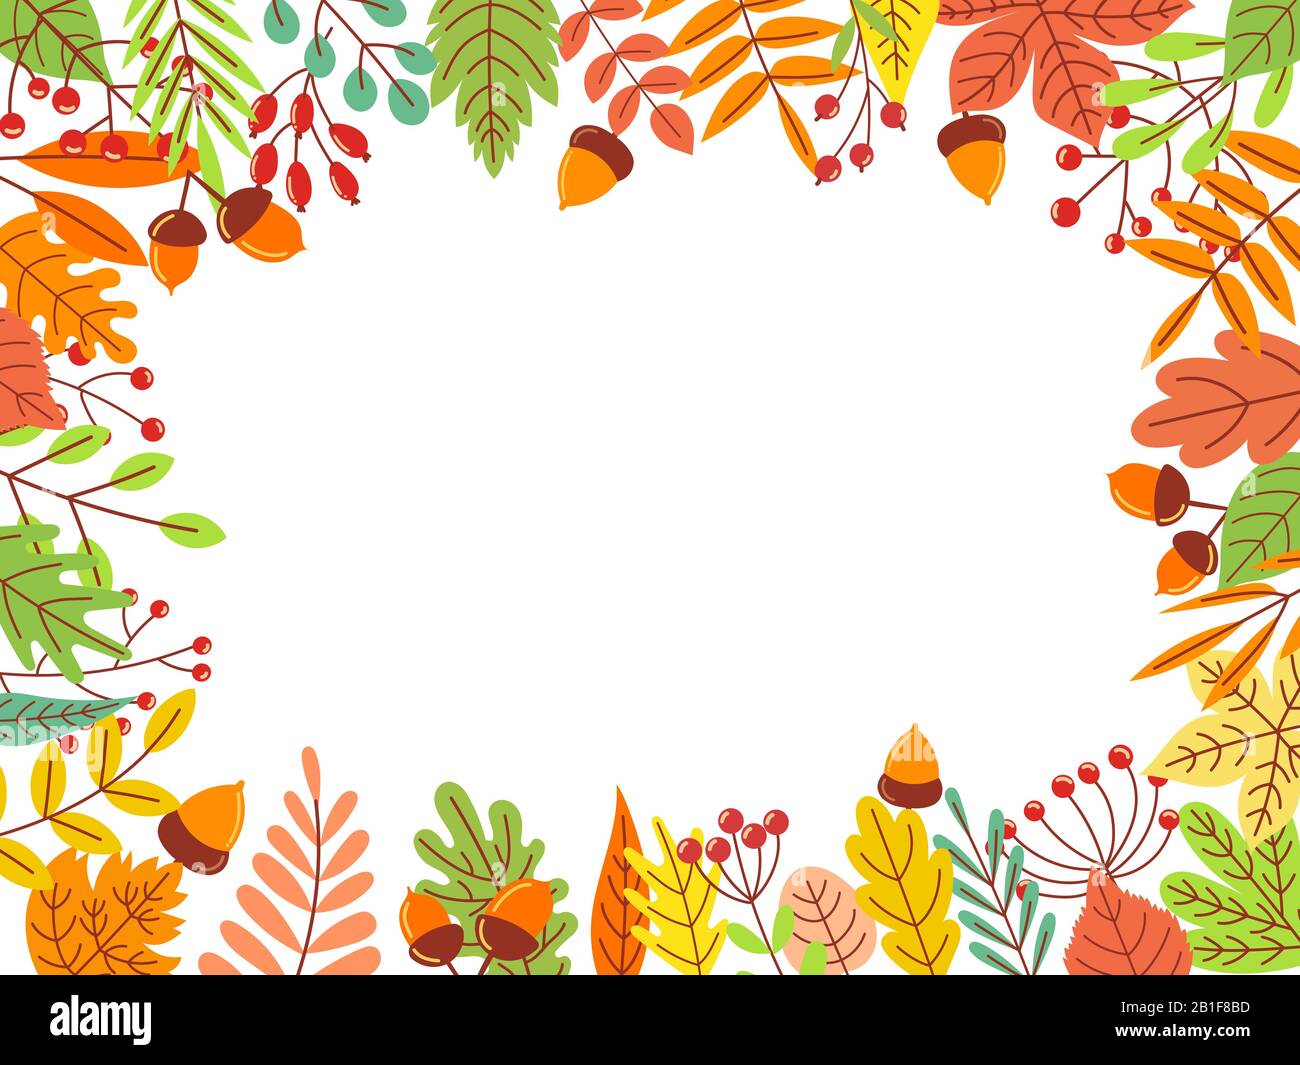 Cadre des feuilles d'automne. Feuille jaune tombée, feuillage de septembre et jardin d'automne laisse la frontière illustration vectorielle Illustration de Vecteur